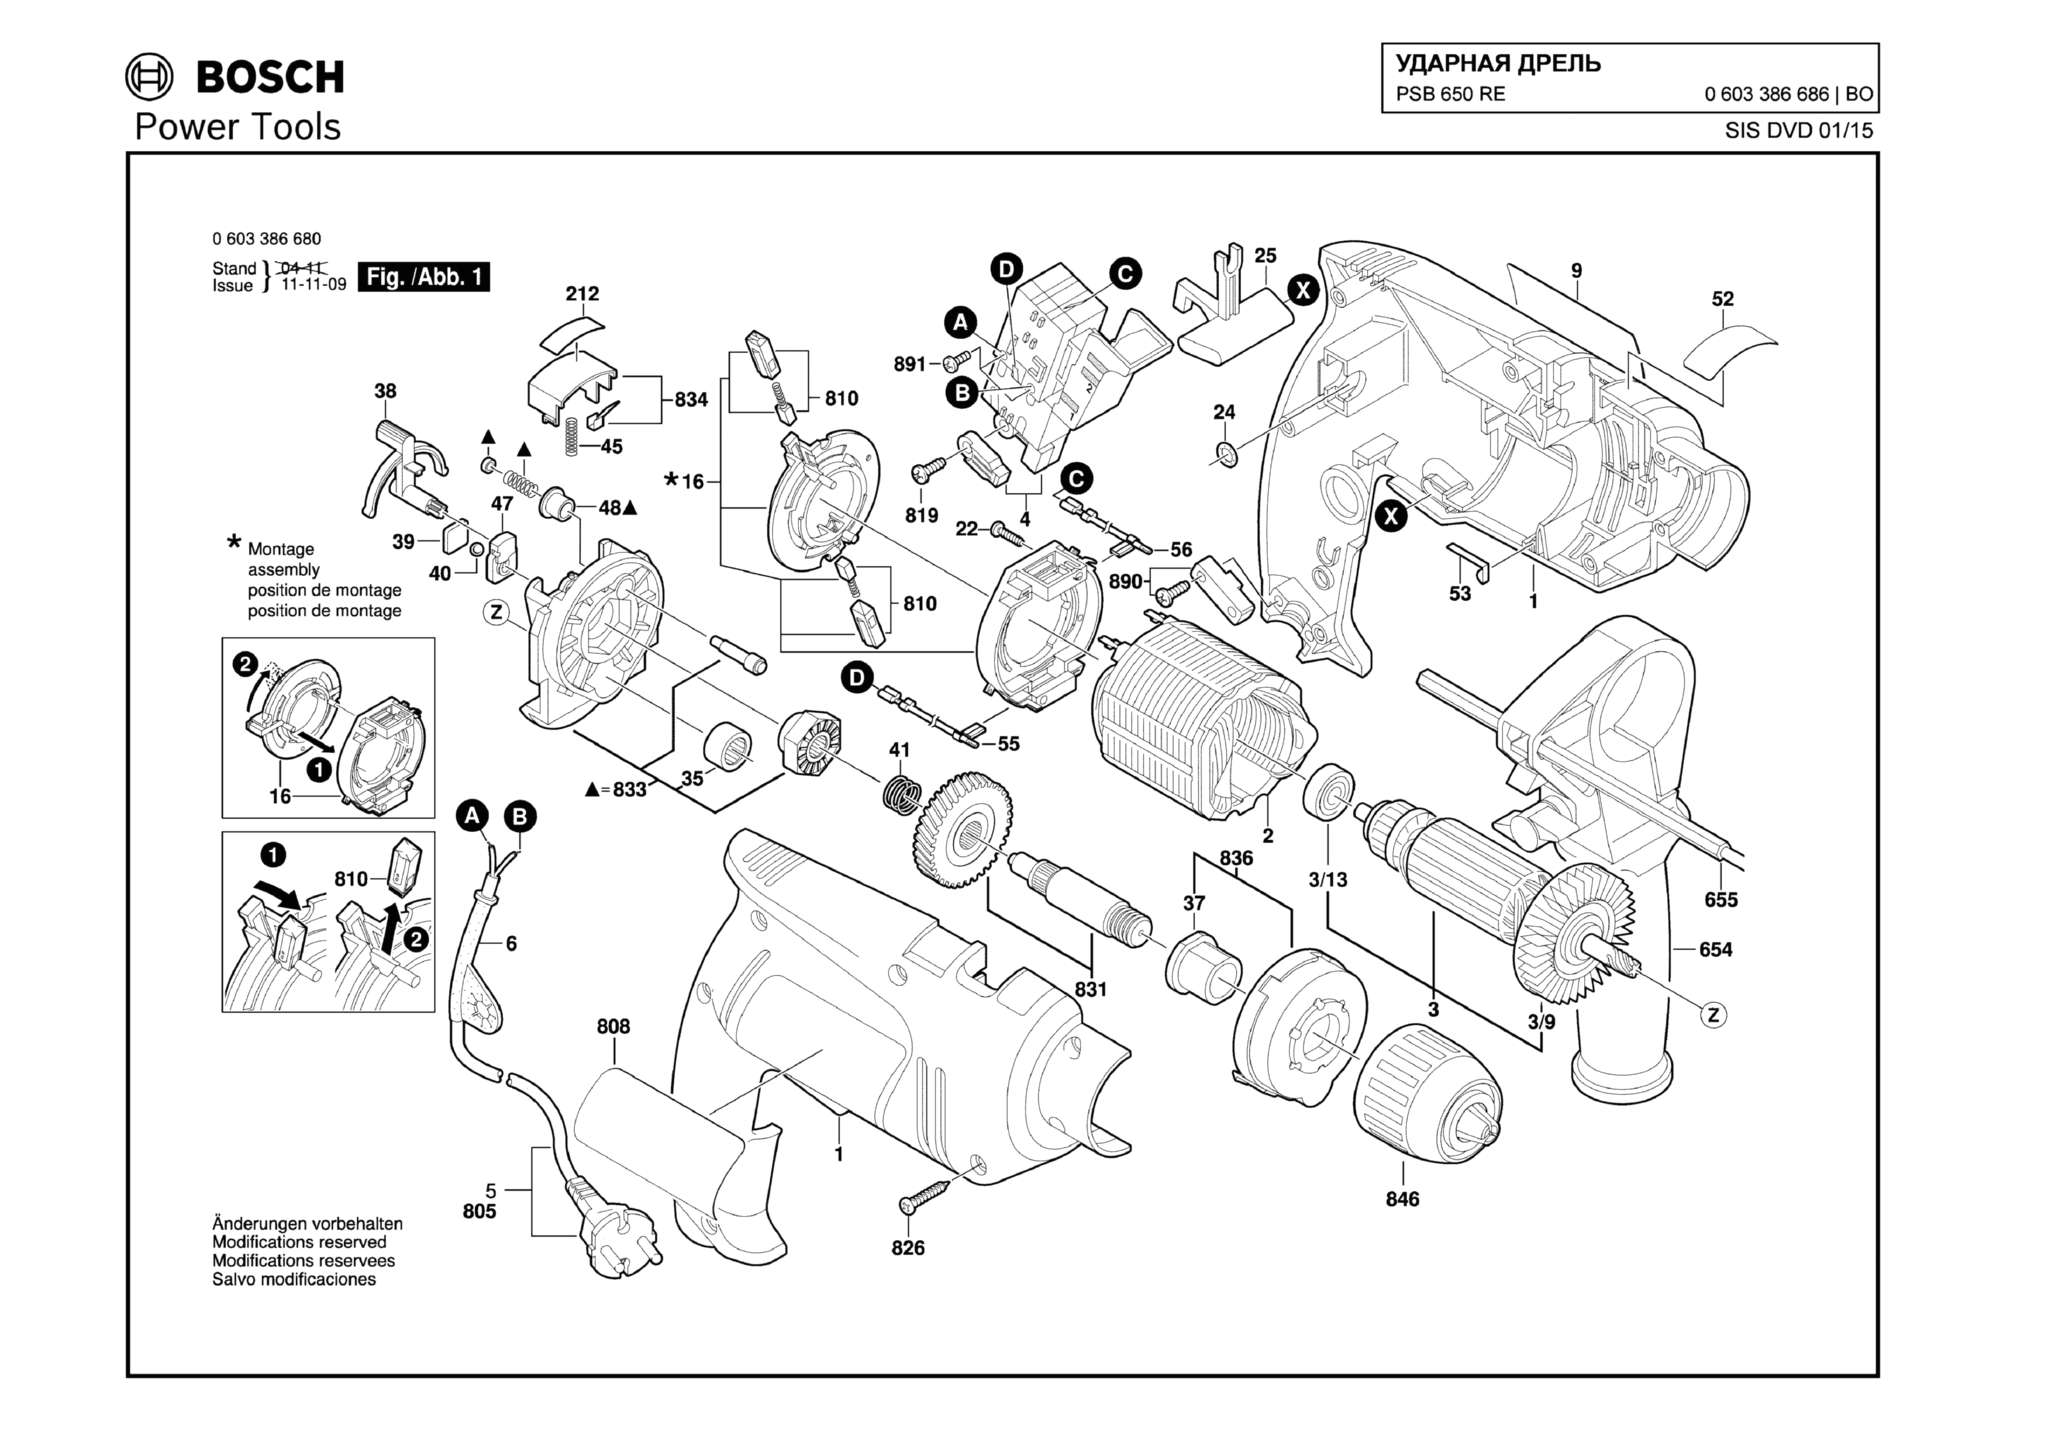 Запчасти, схема и деталировка Bosch PSB 650 RE (ТИП 0603386686)